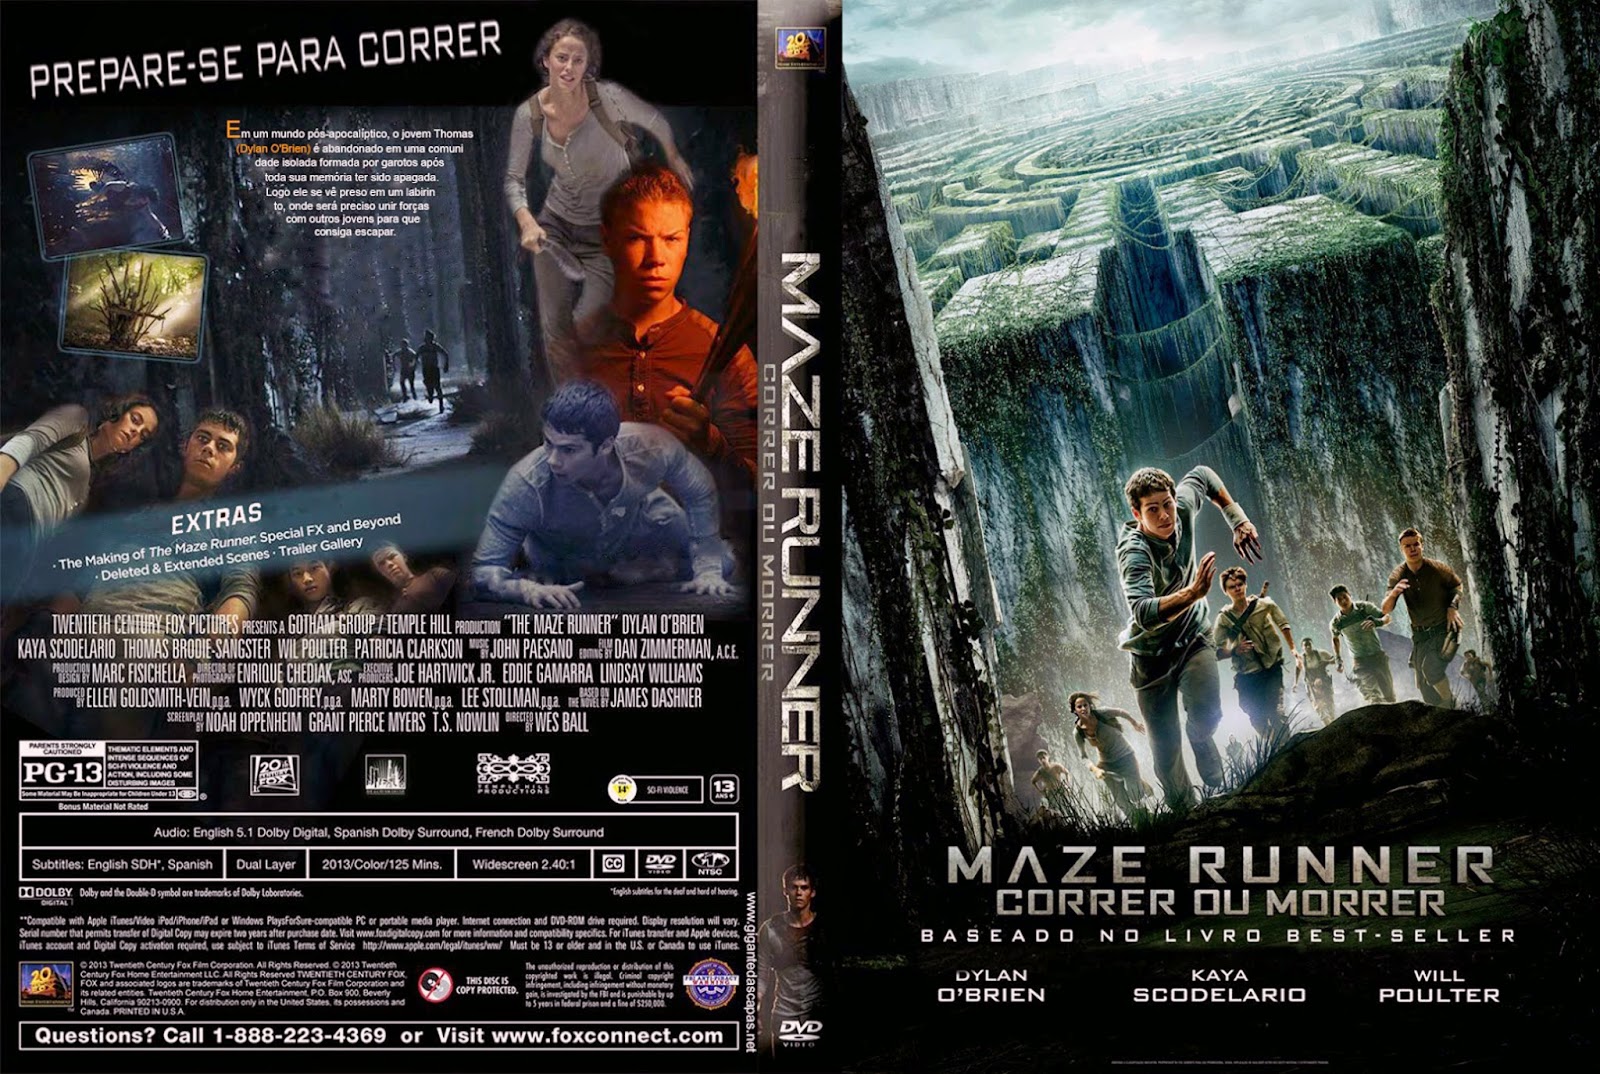 Maze Runner: Correr ou Morrer#filmesparaassistir #acao